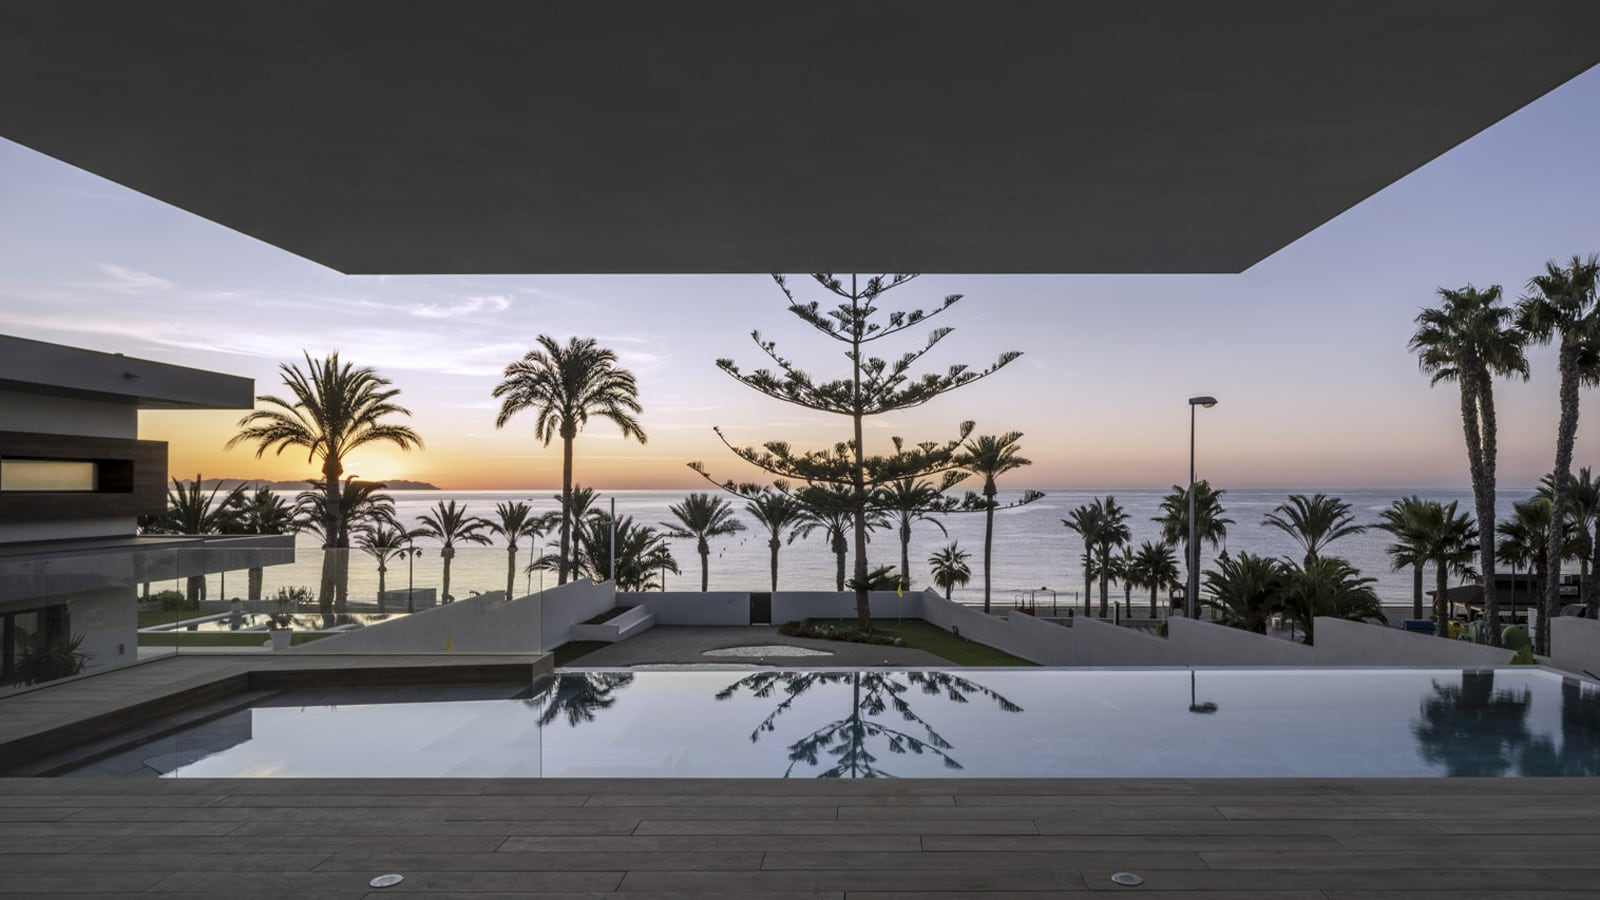 Lo studio Mariano Molina valorizza l'architettura geometrica di questa abitazione aperta sul mare